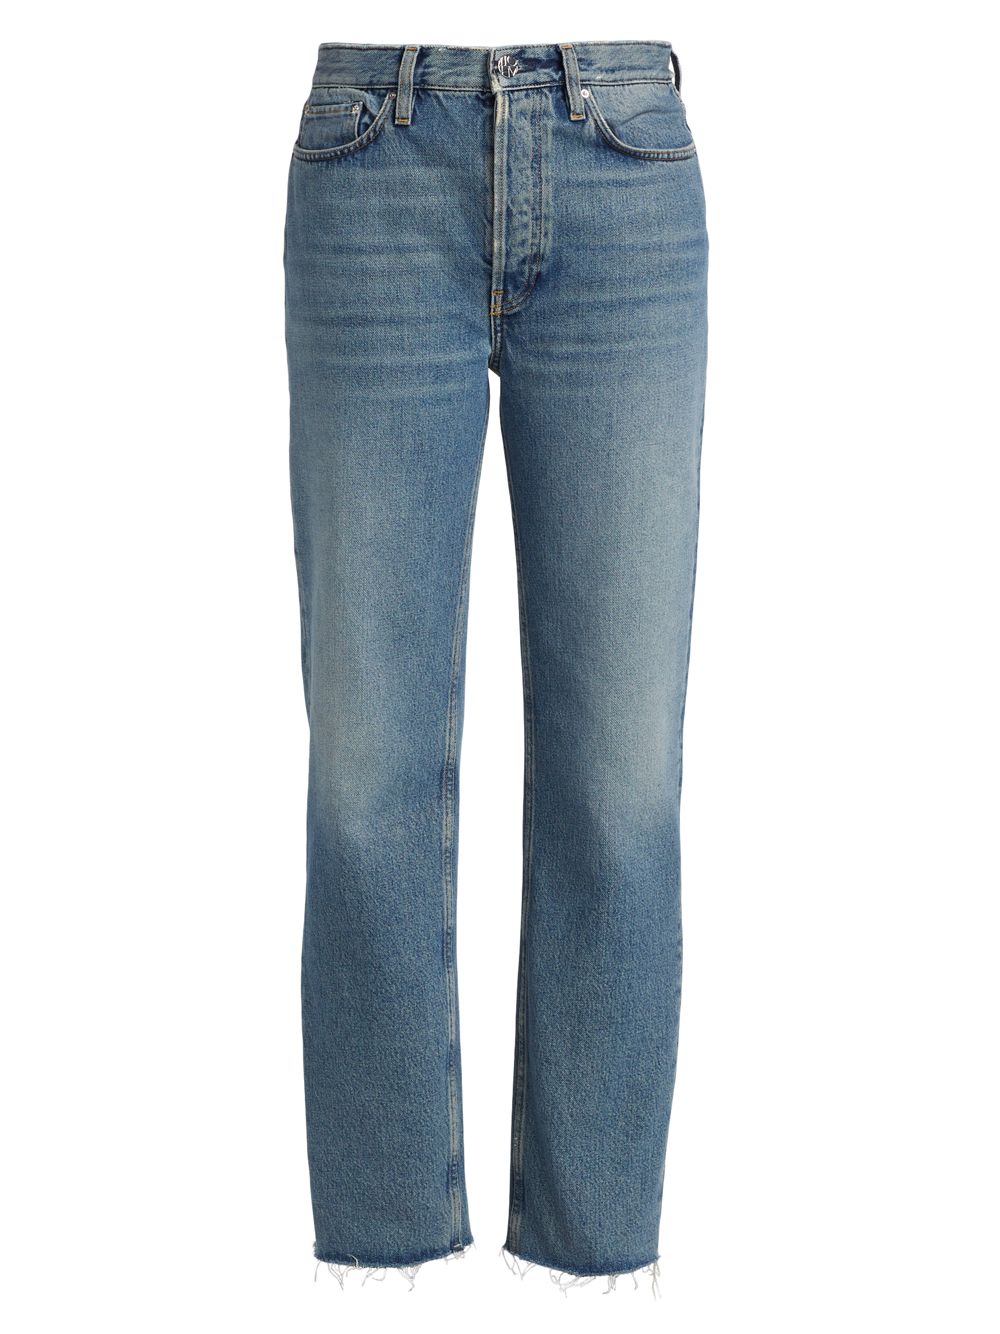 Классические прямые джинсы со средней посадкой Totême, винтаж